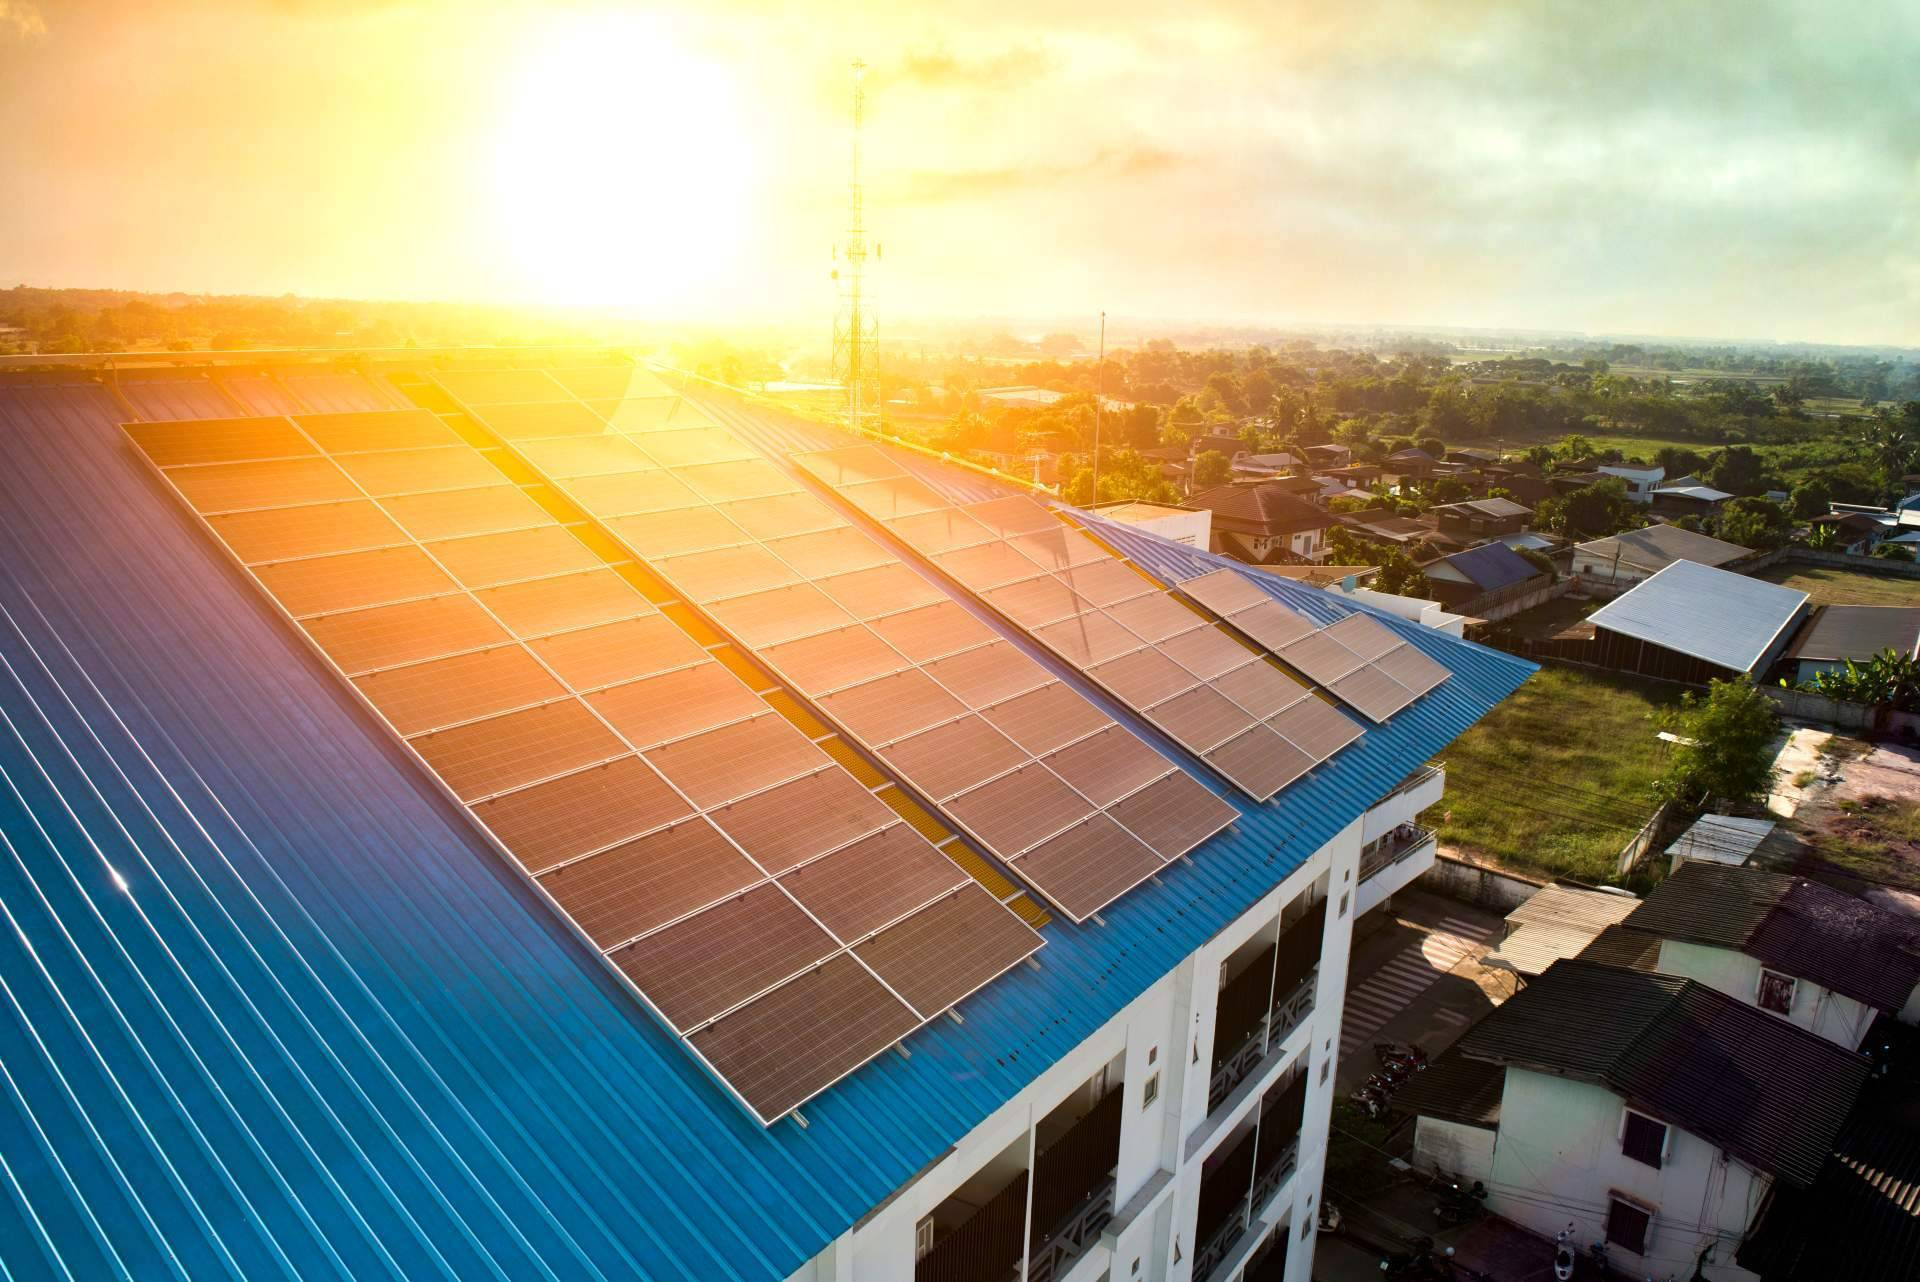  Instalación solar desde 3 € al día con baterías de litio. Financiación hasta 10 años para viviendas, empresas y comunidades de vecinos con Solar Tres60 